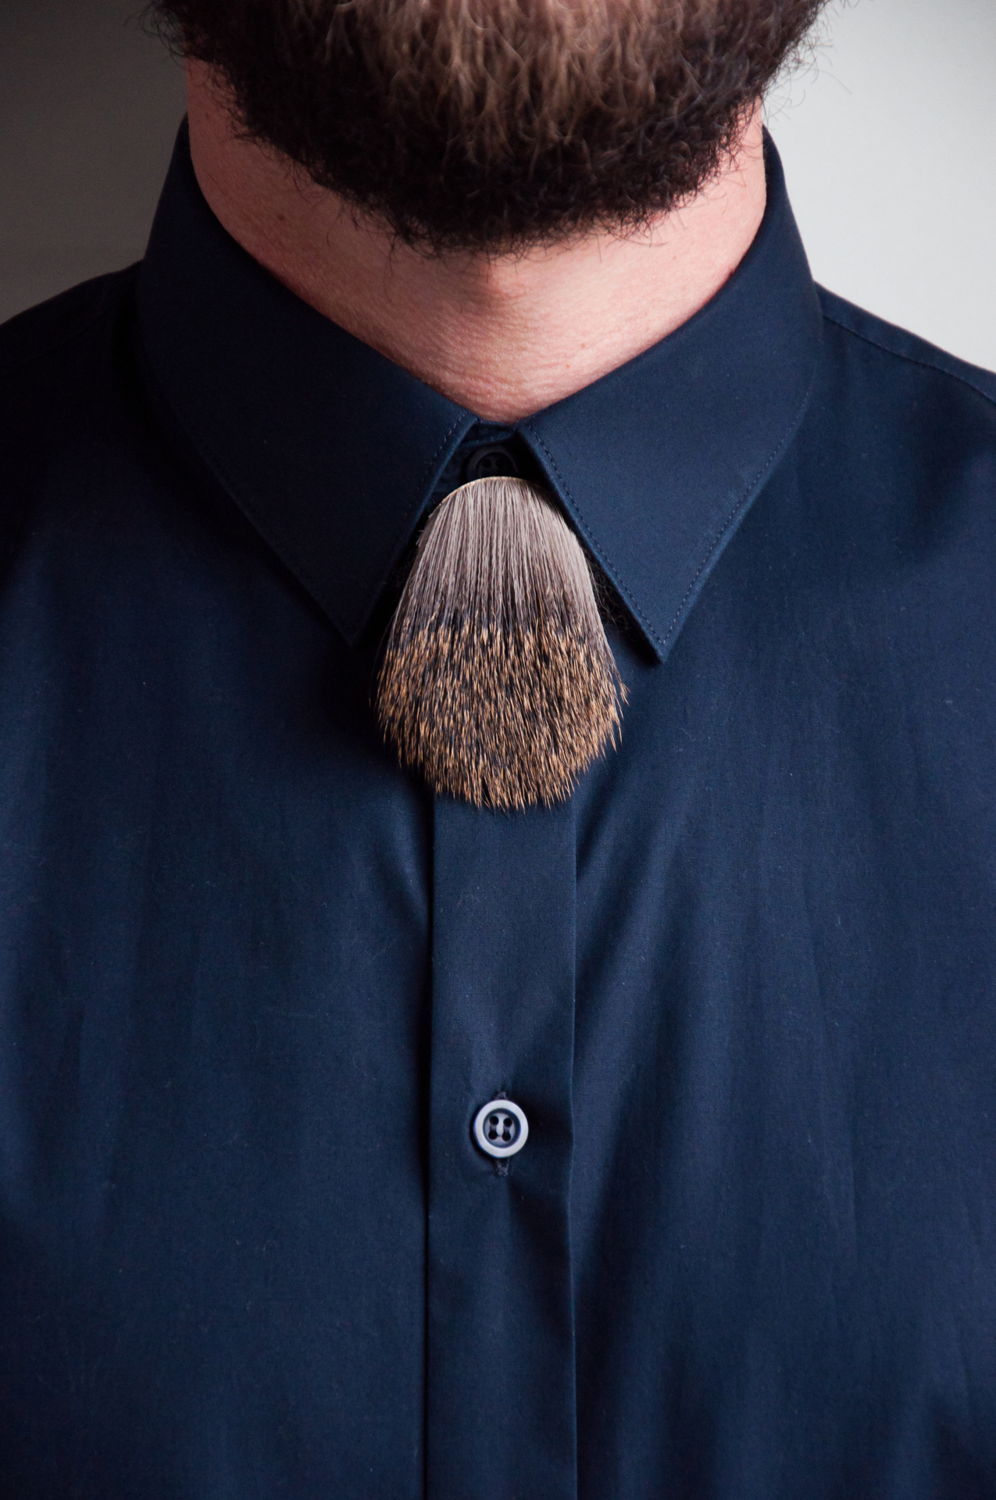 My brooch is your tie - 2014 - broche - reehuid tuigleder en magneten - Lore Langendries